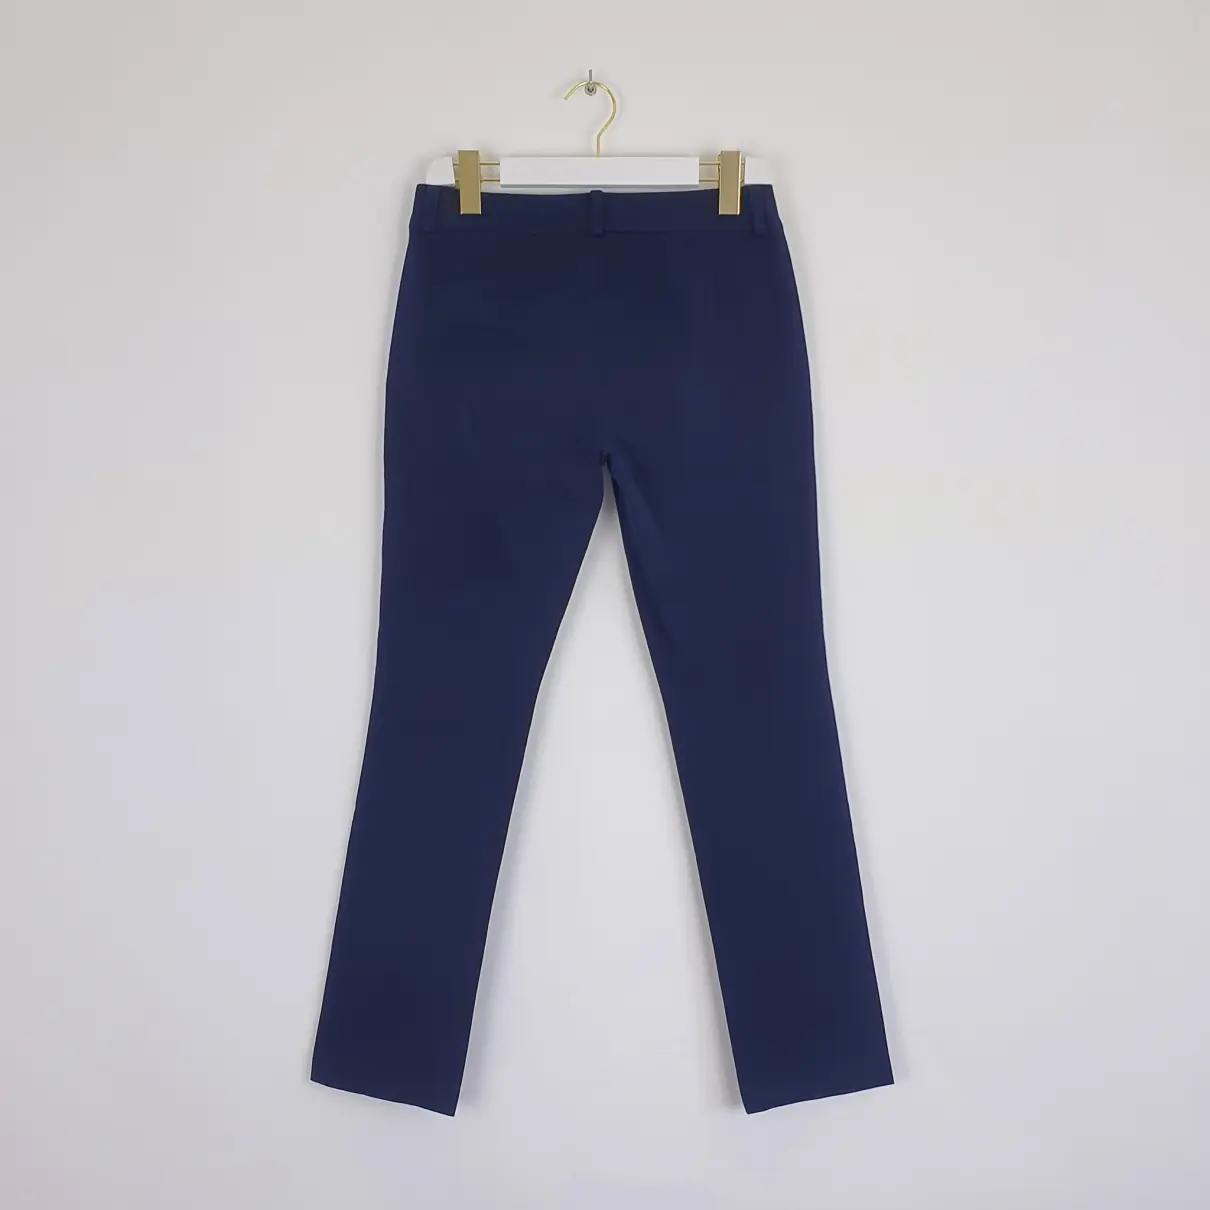 Buy Lauren Ralph Lauren Chino pants online